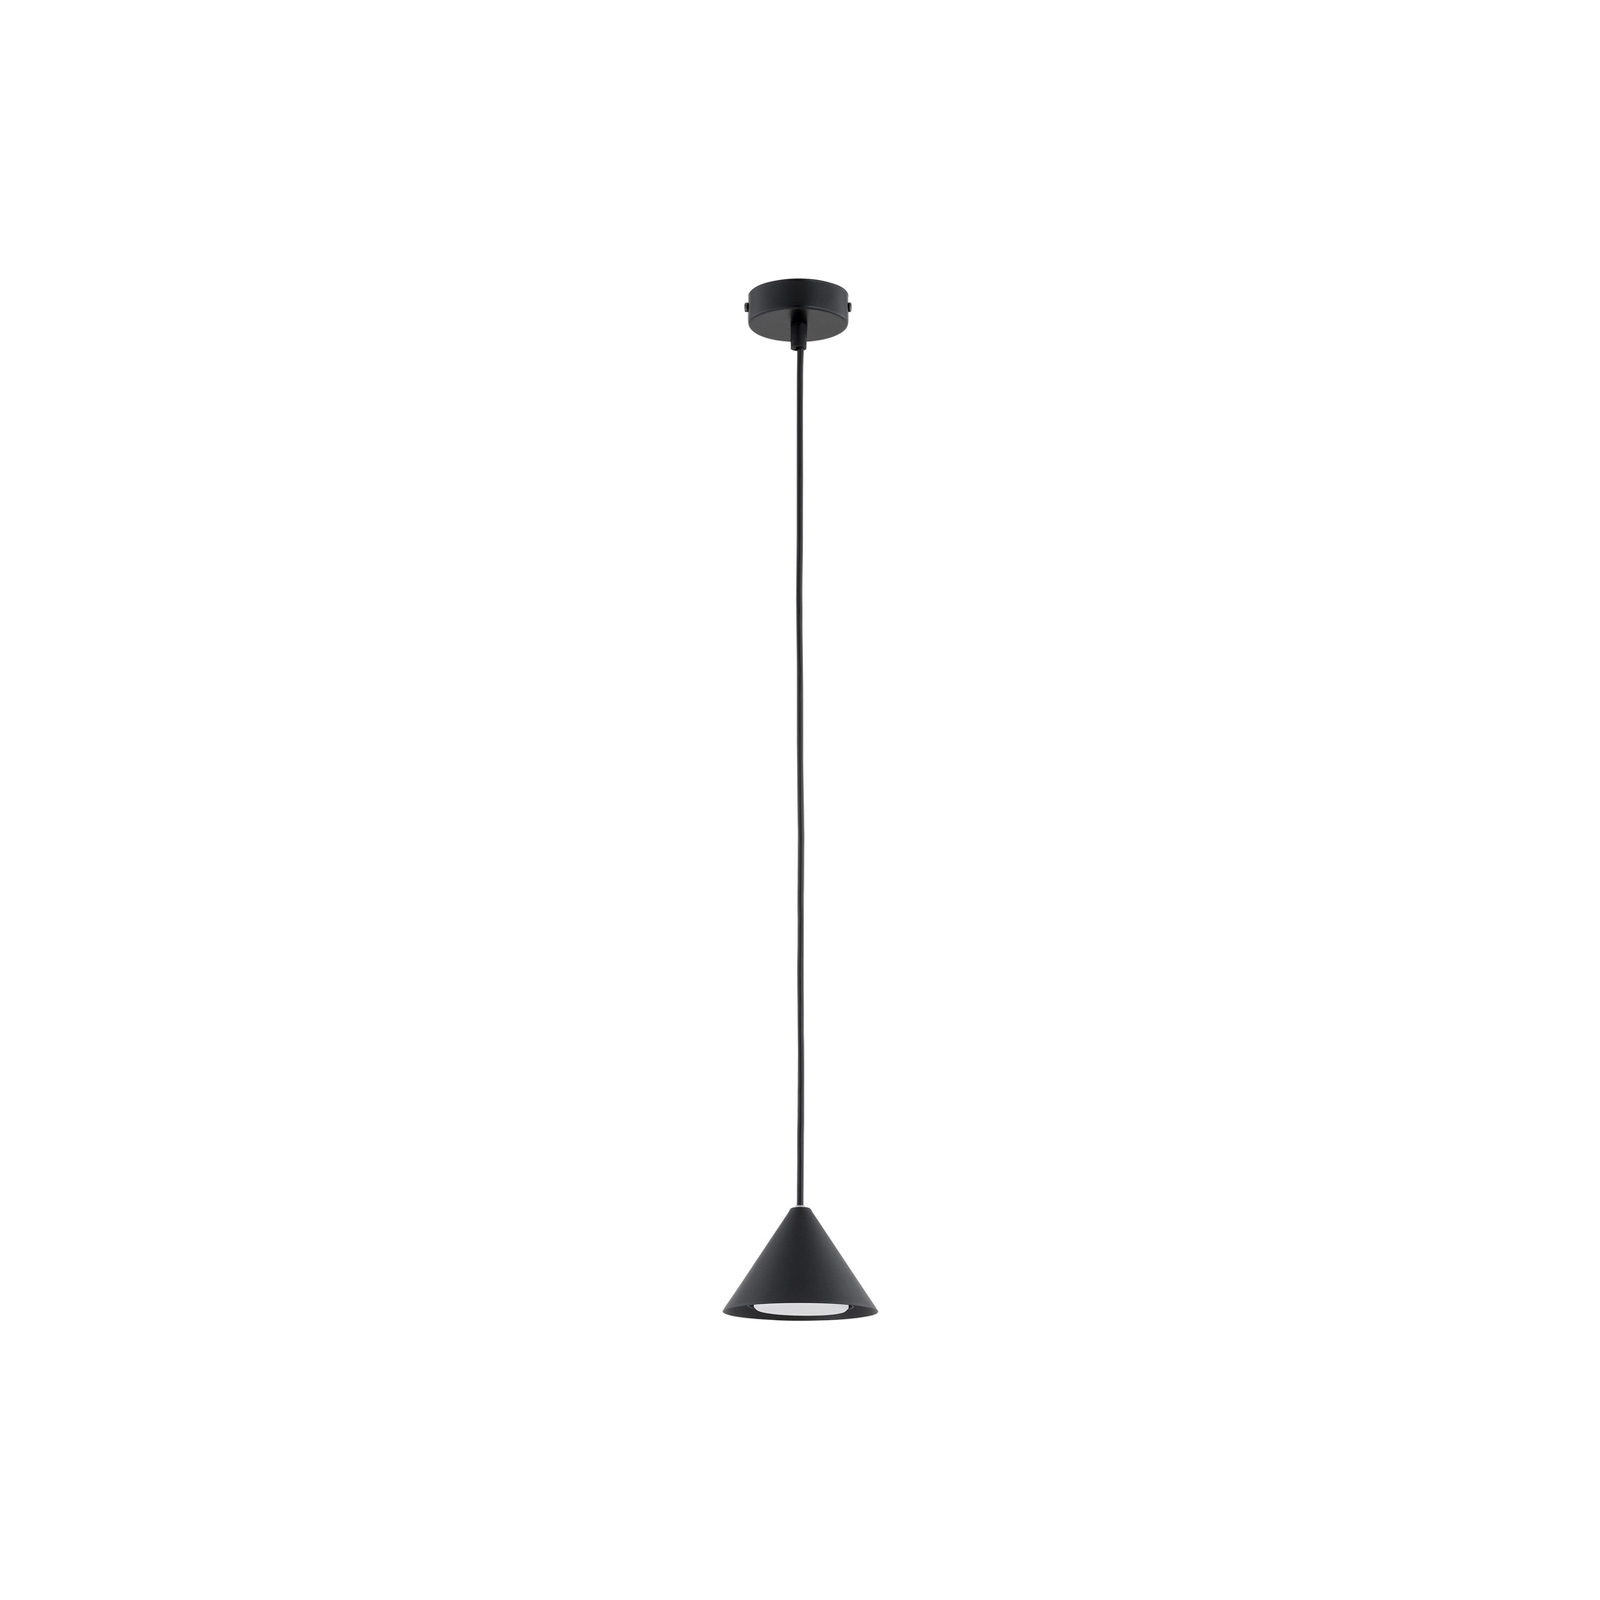 Elit pendant light, 1-bulb, black, metal